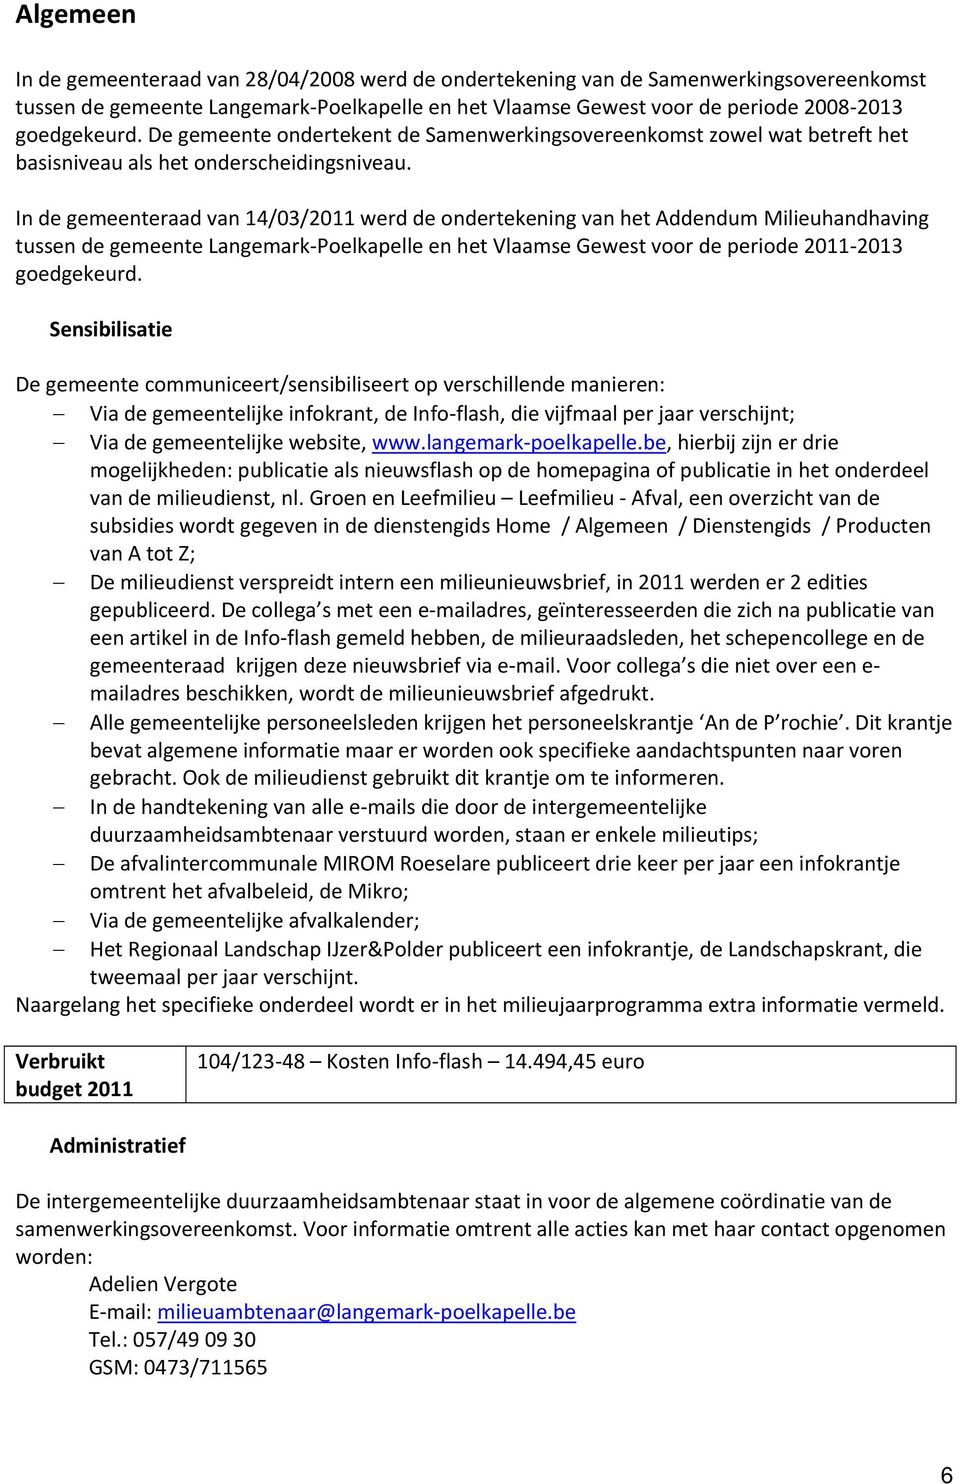 In de gemeenteraad van 14032011 werd de ondertekening van het Addendum Milieuhandhaving tussen de gemeente Langemark Poelkapelle en het Vlaamse Gewest voor de periode 2011 2013 goedgekeurd.